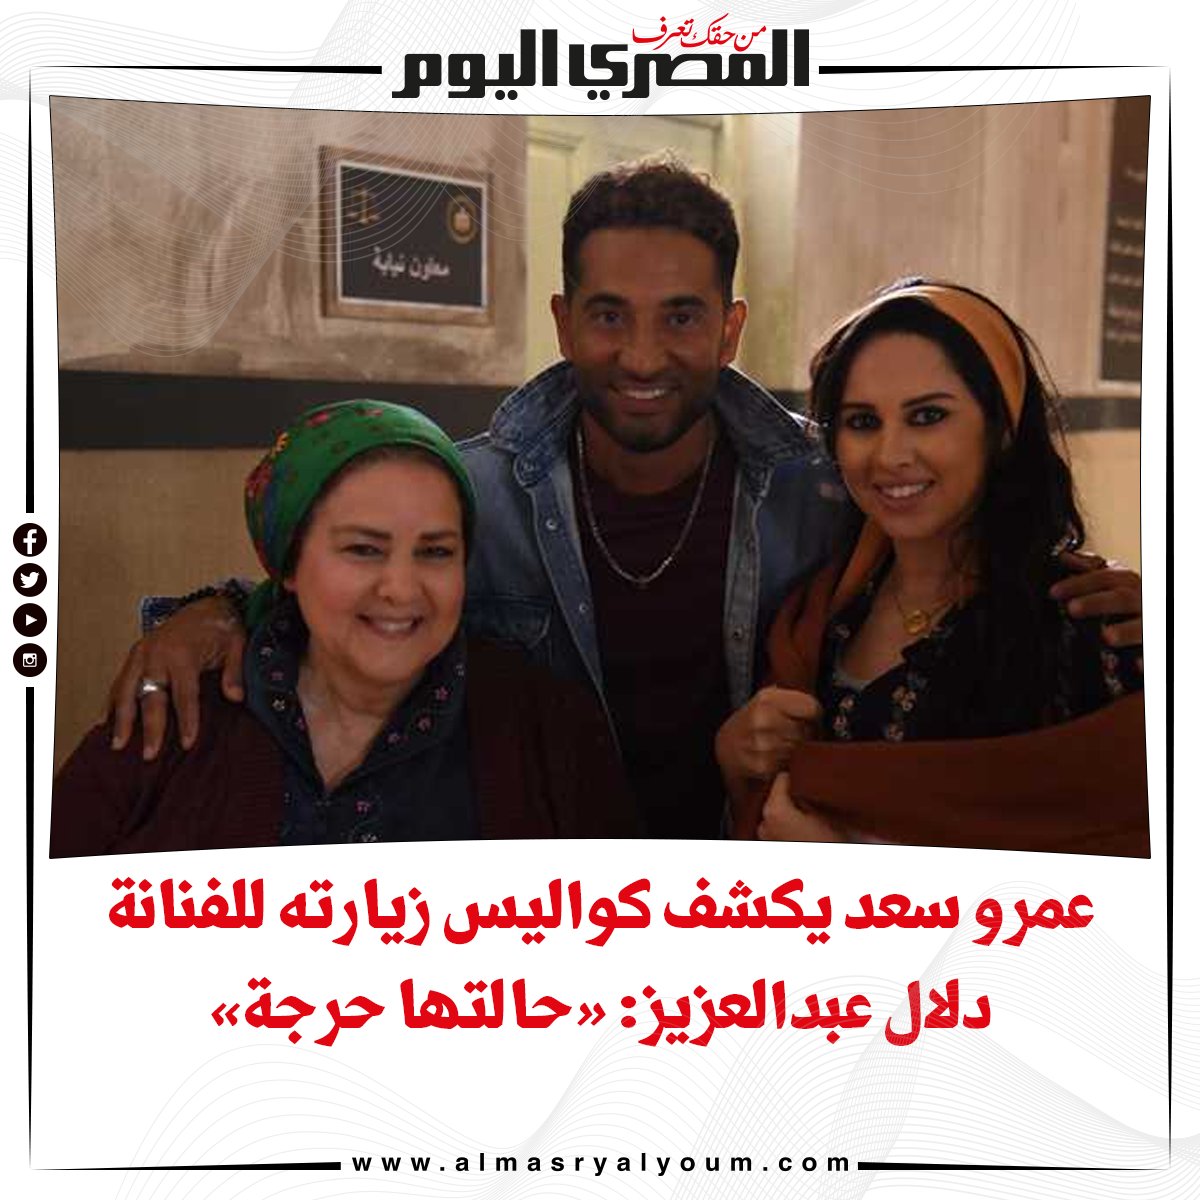 عاجل بالفيديو عمرو سعد يكشف كواليس زيارته للفنانة دلال عبدالعزيز «حالتها حرجة»